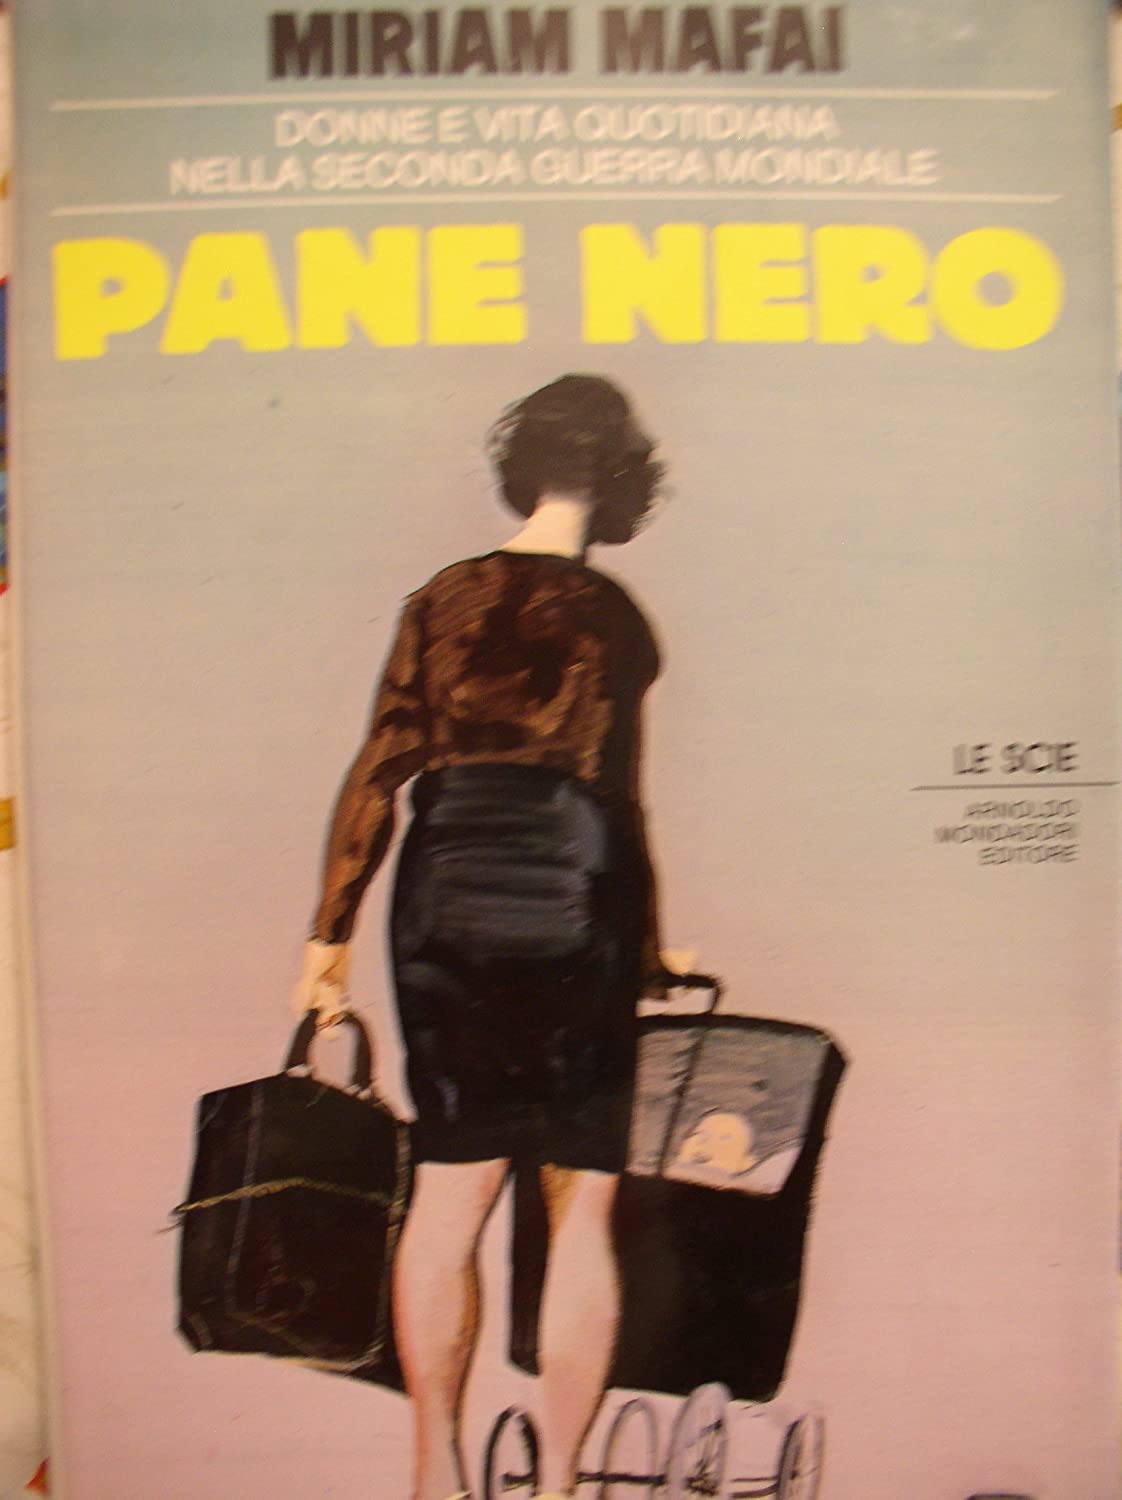 Pane nero: Donne e vita quotidiana nella Seconda guerra mondiale (Le Scie) (Italian Edition)